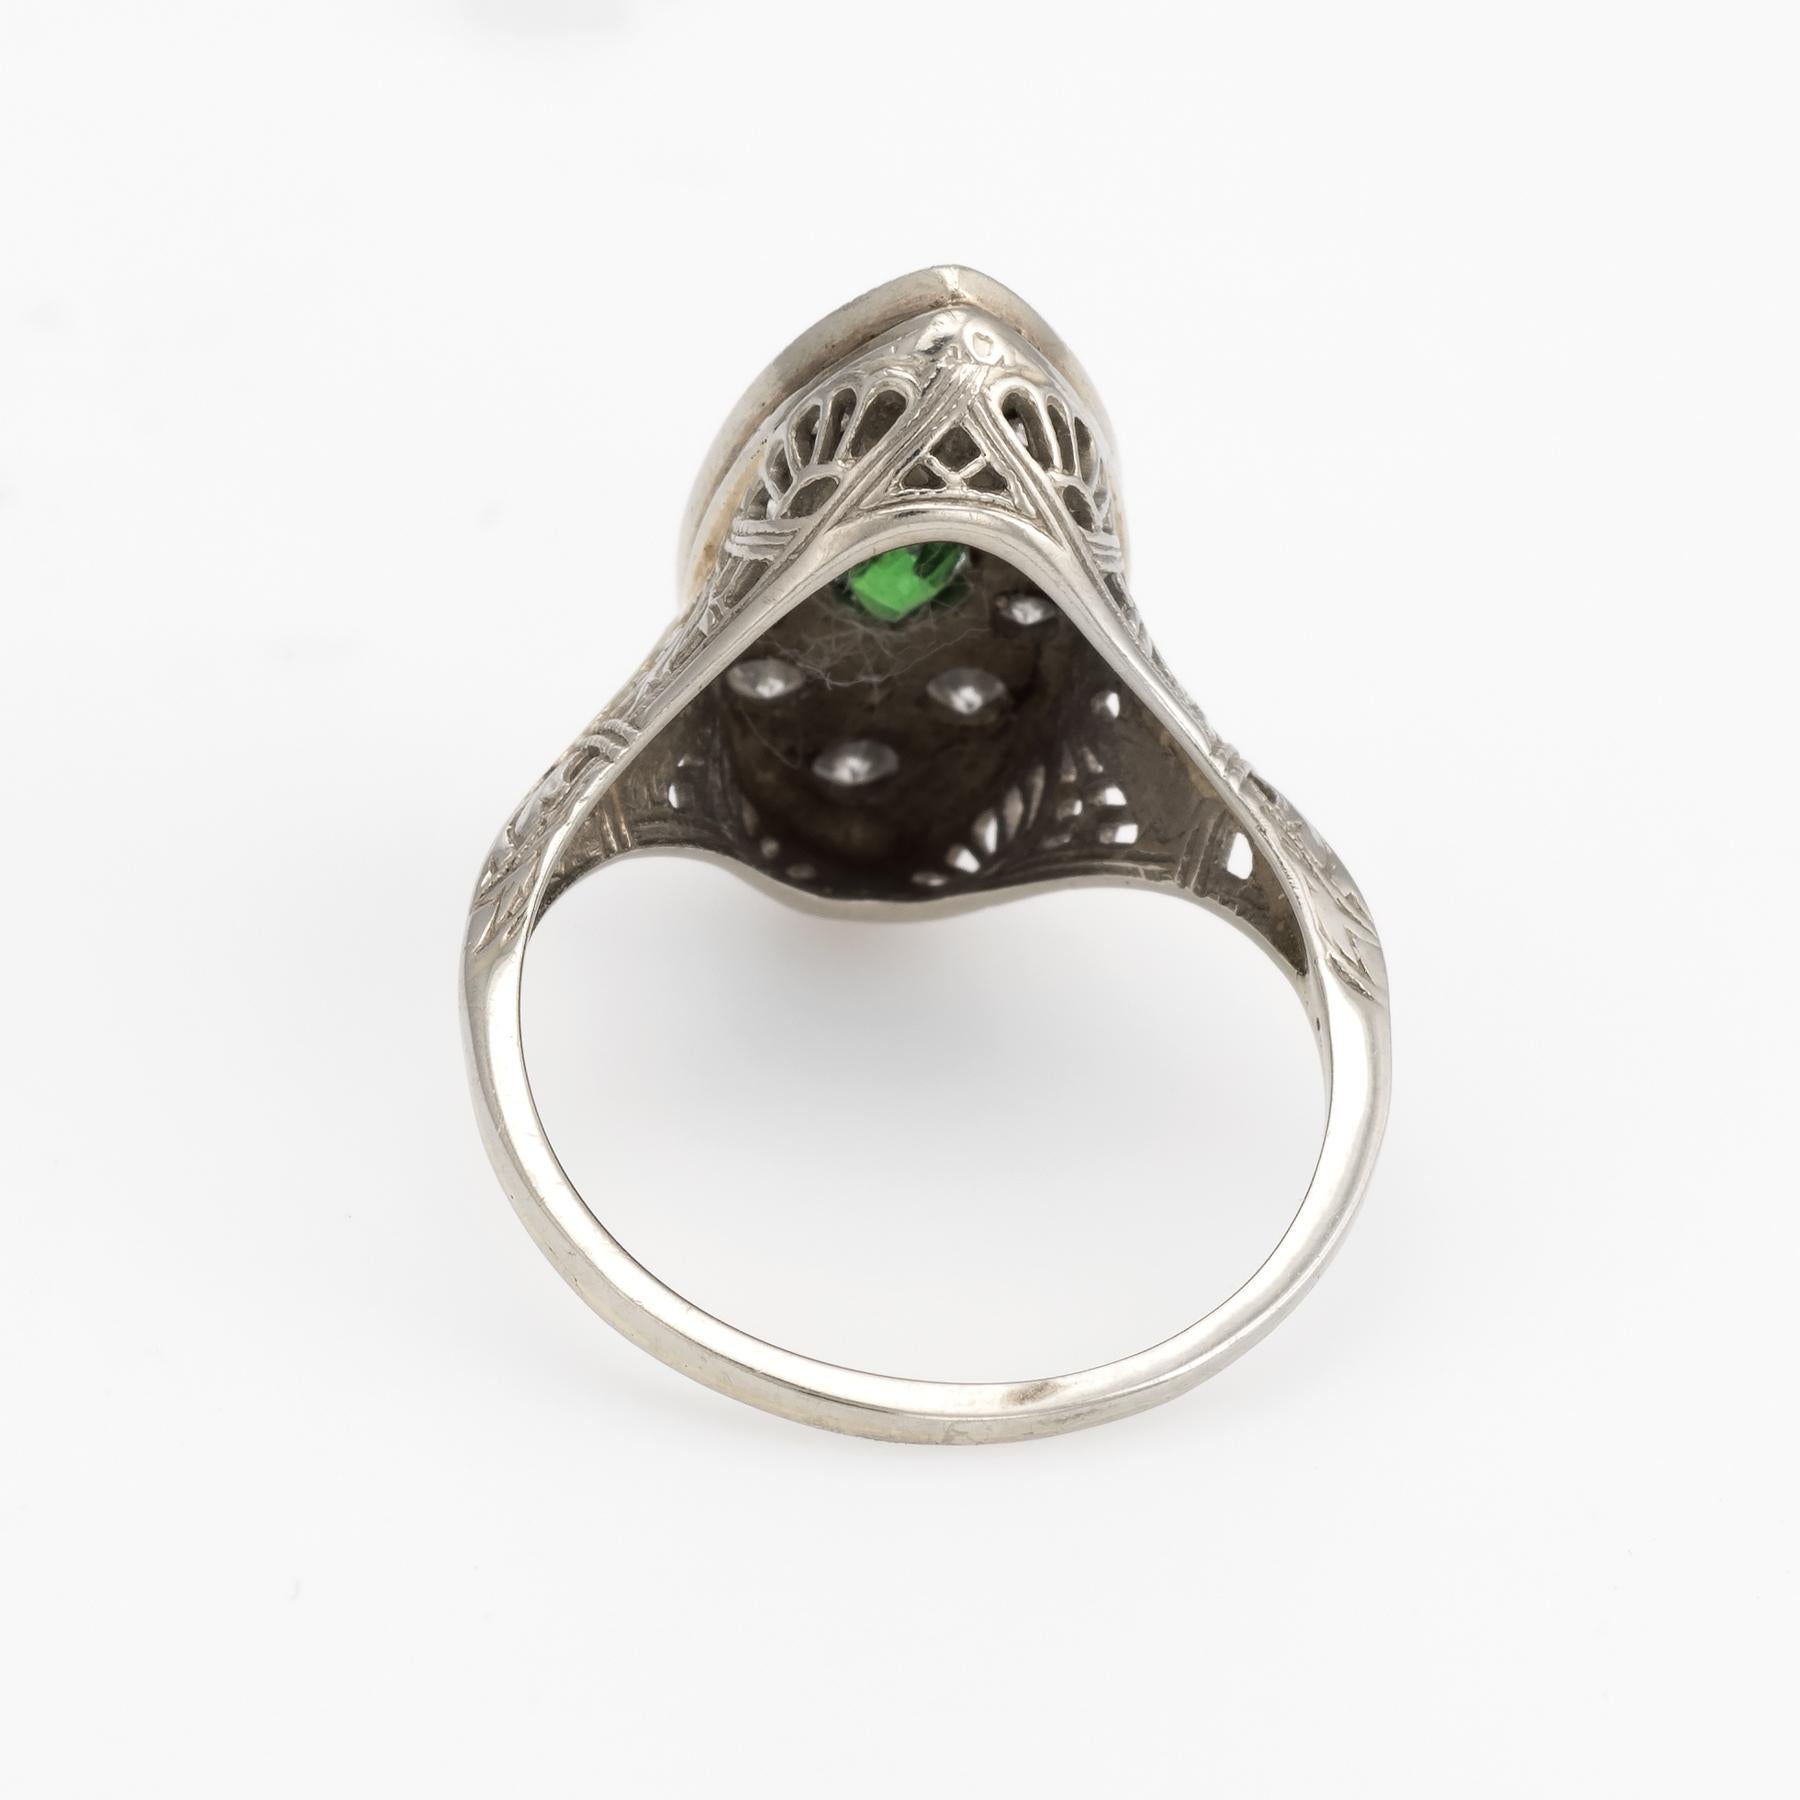 Women's Vintage Art Deco Diamond Ring Navette Emerald 14k White Gold Filigree